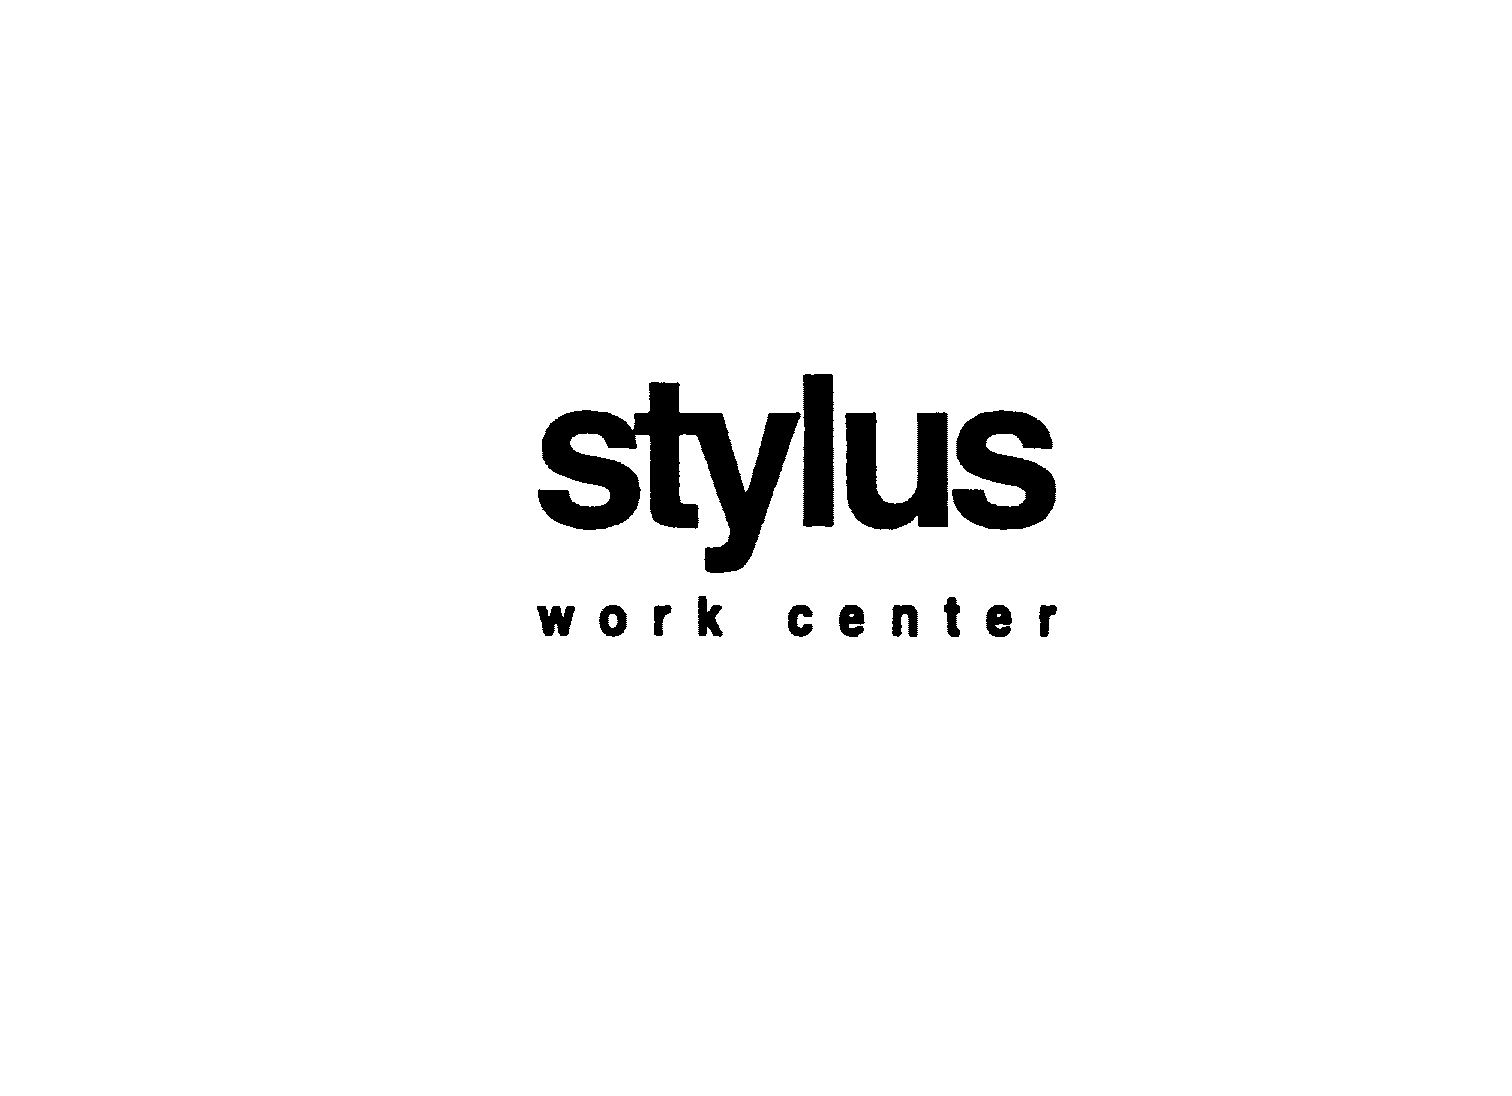  STYLUS WORK CENTER